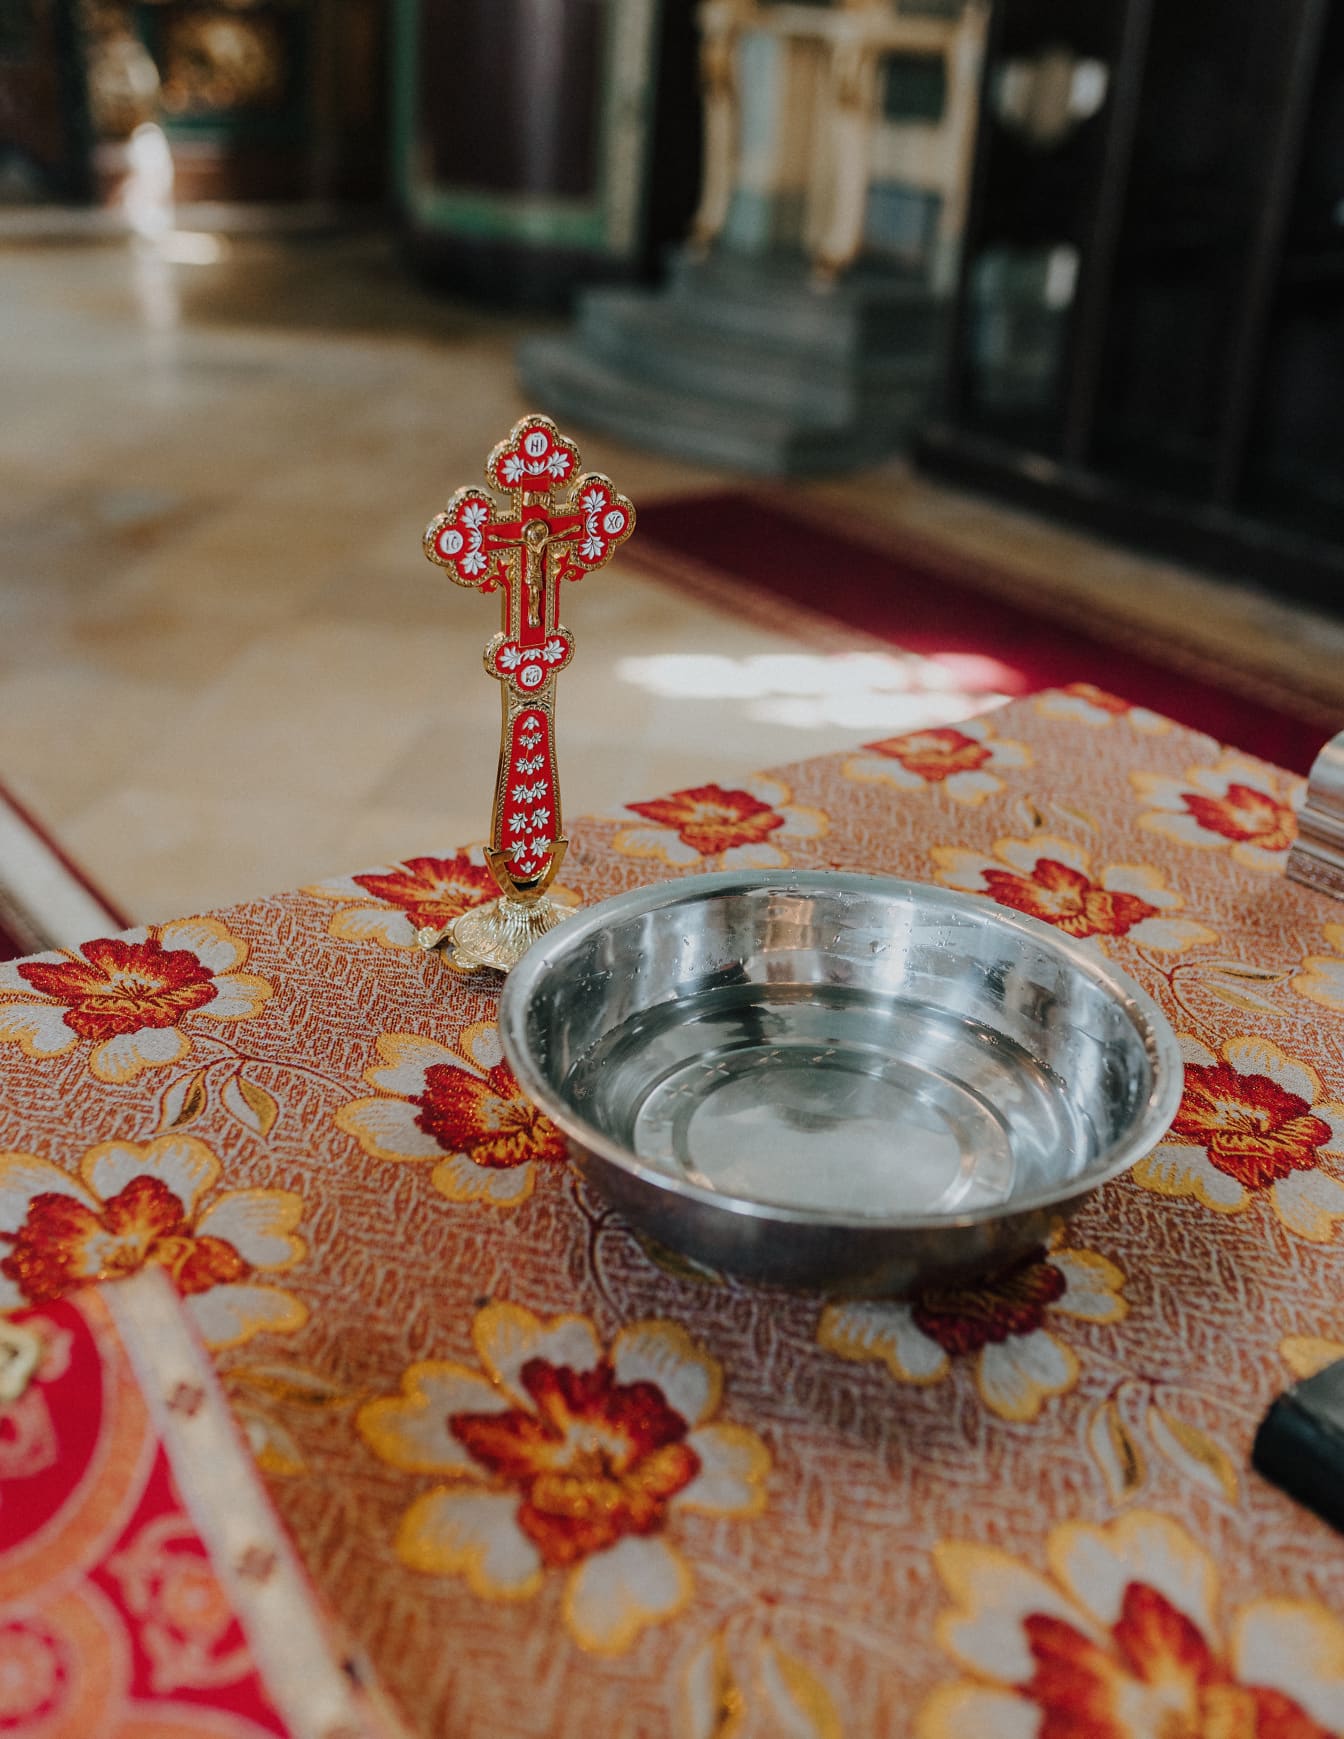 Croce ortodossa in oro con decorazione ornamentale rosso scuro e ciotola in metallo su tavola